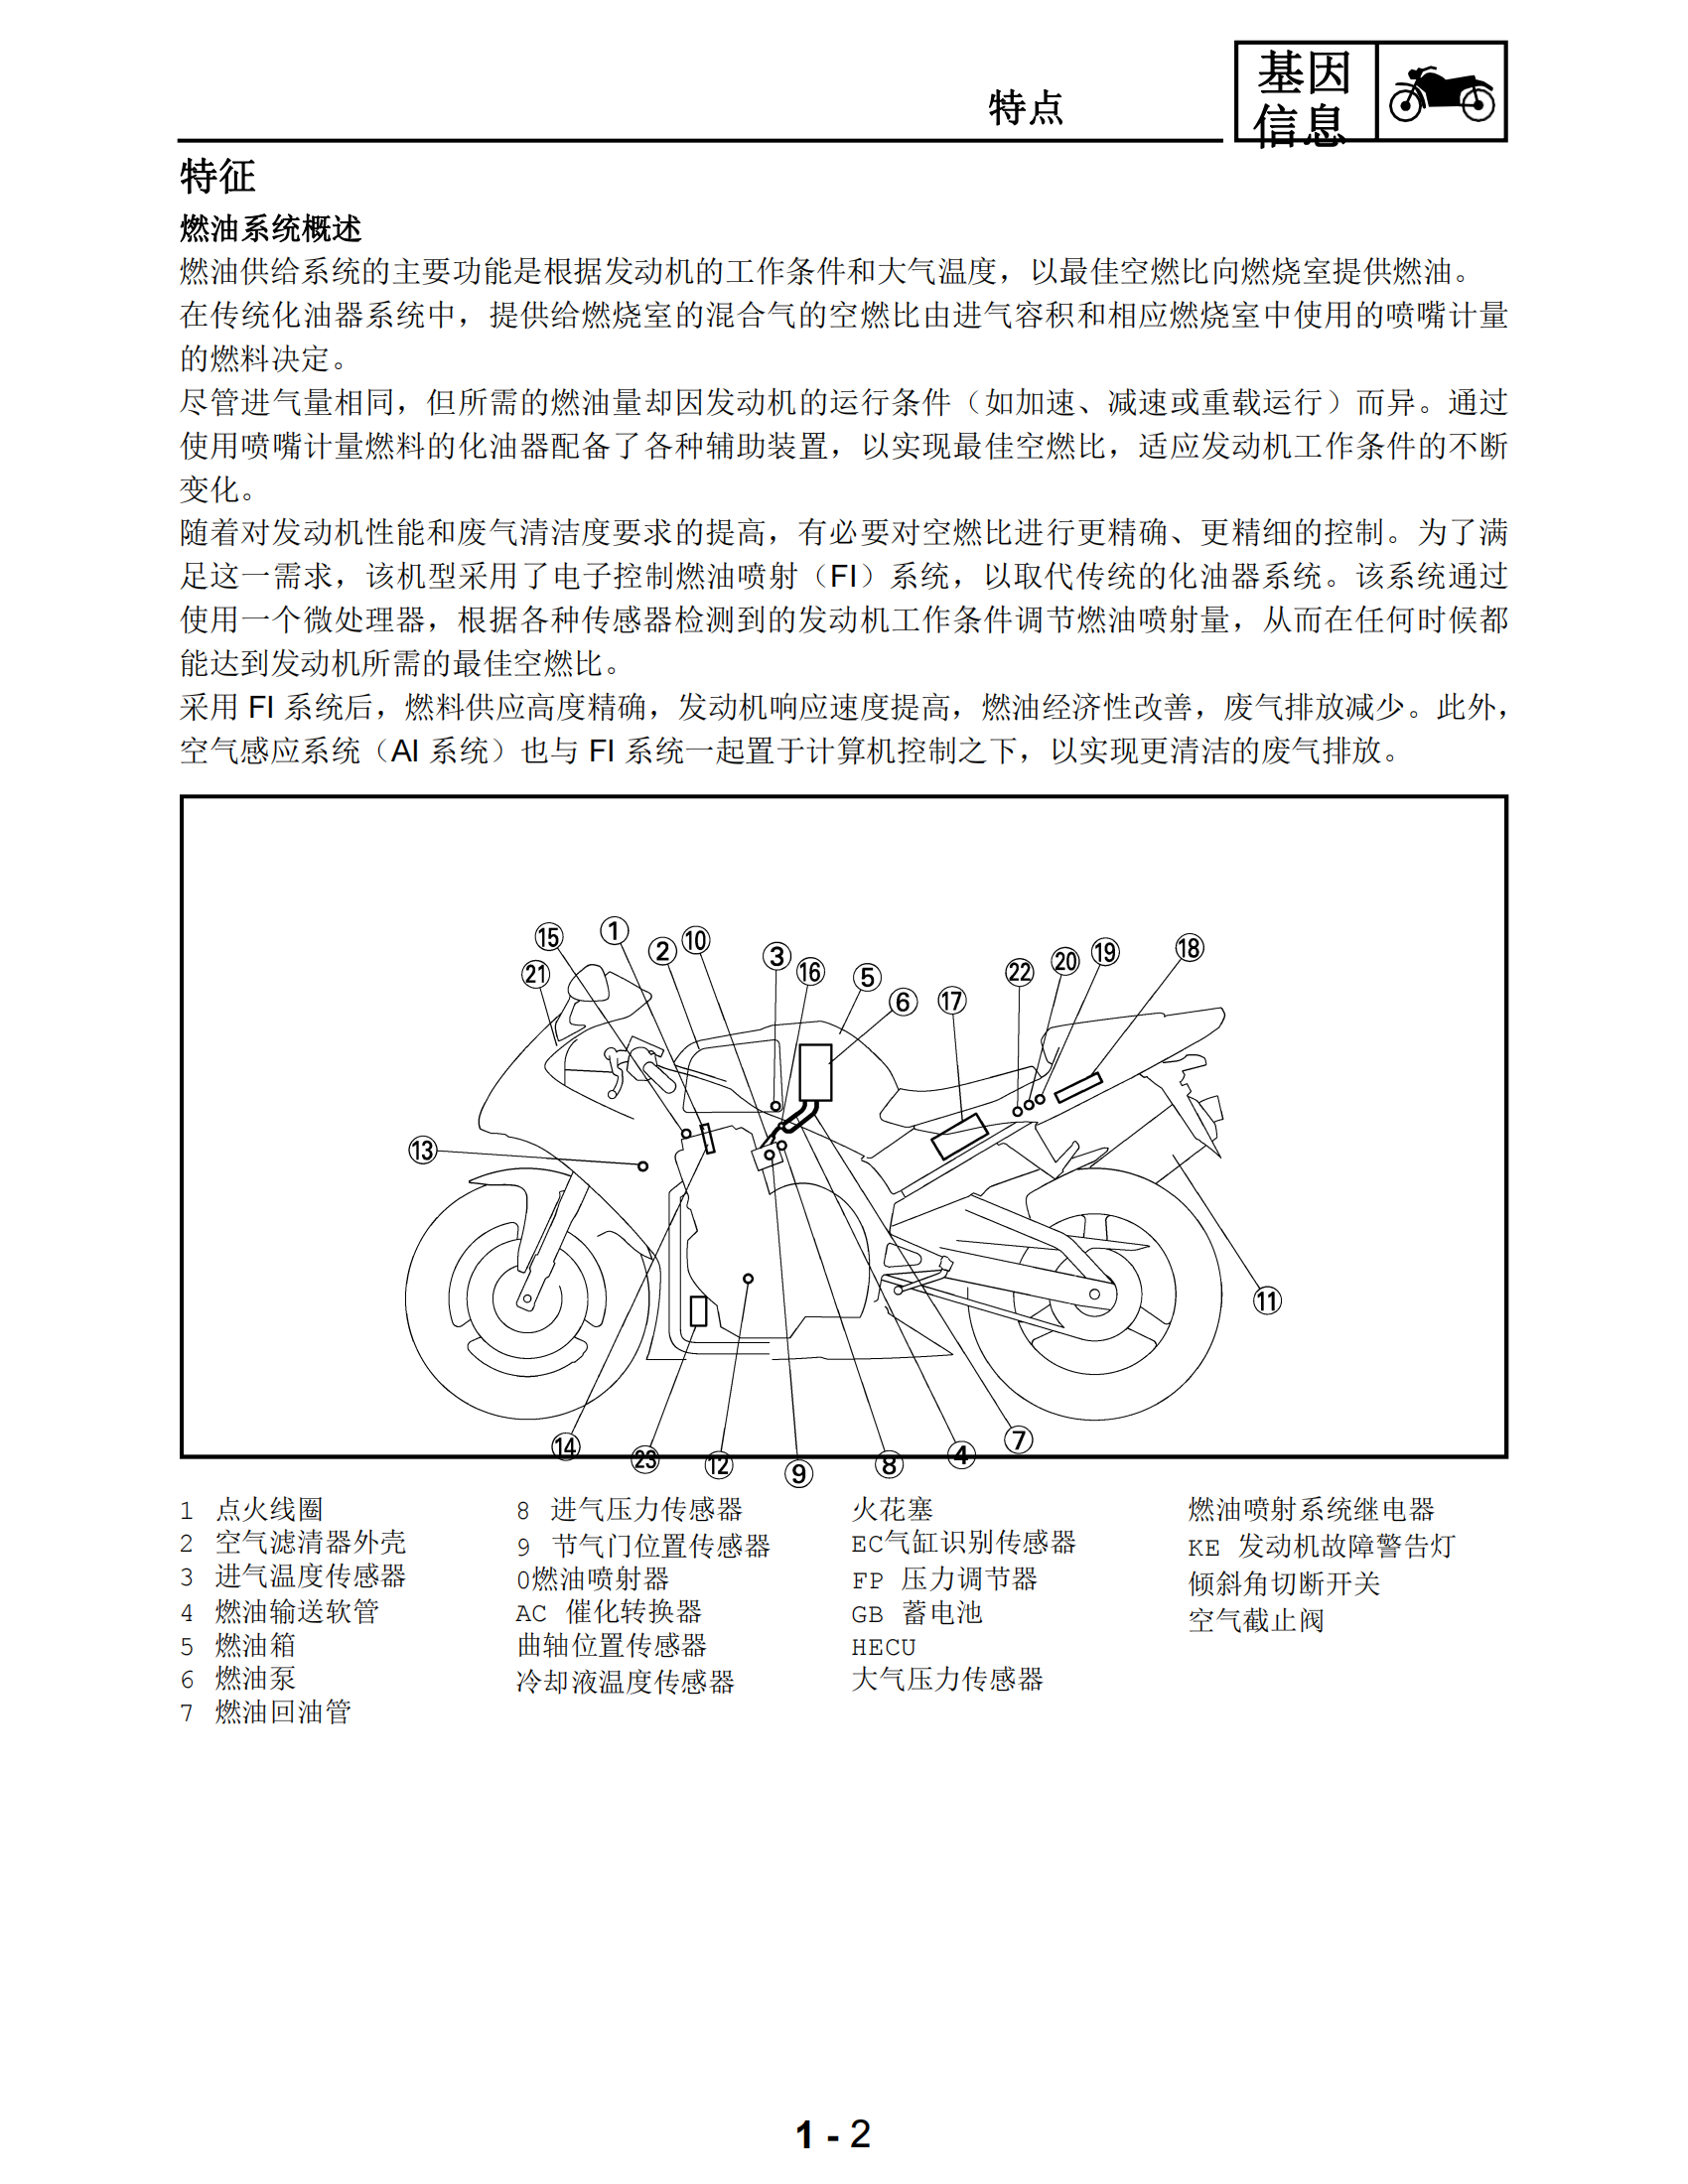 简体中文2002-2003年雅马哈yzfr1雅马哈r1维修手册插图2